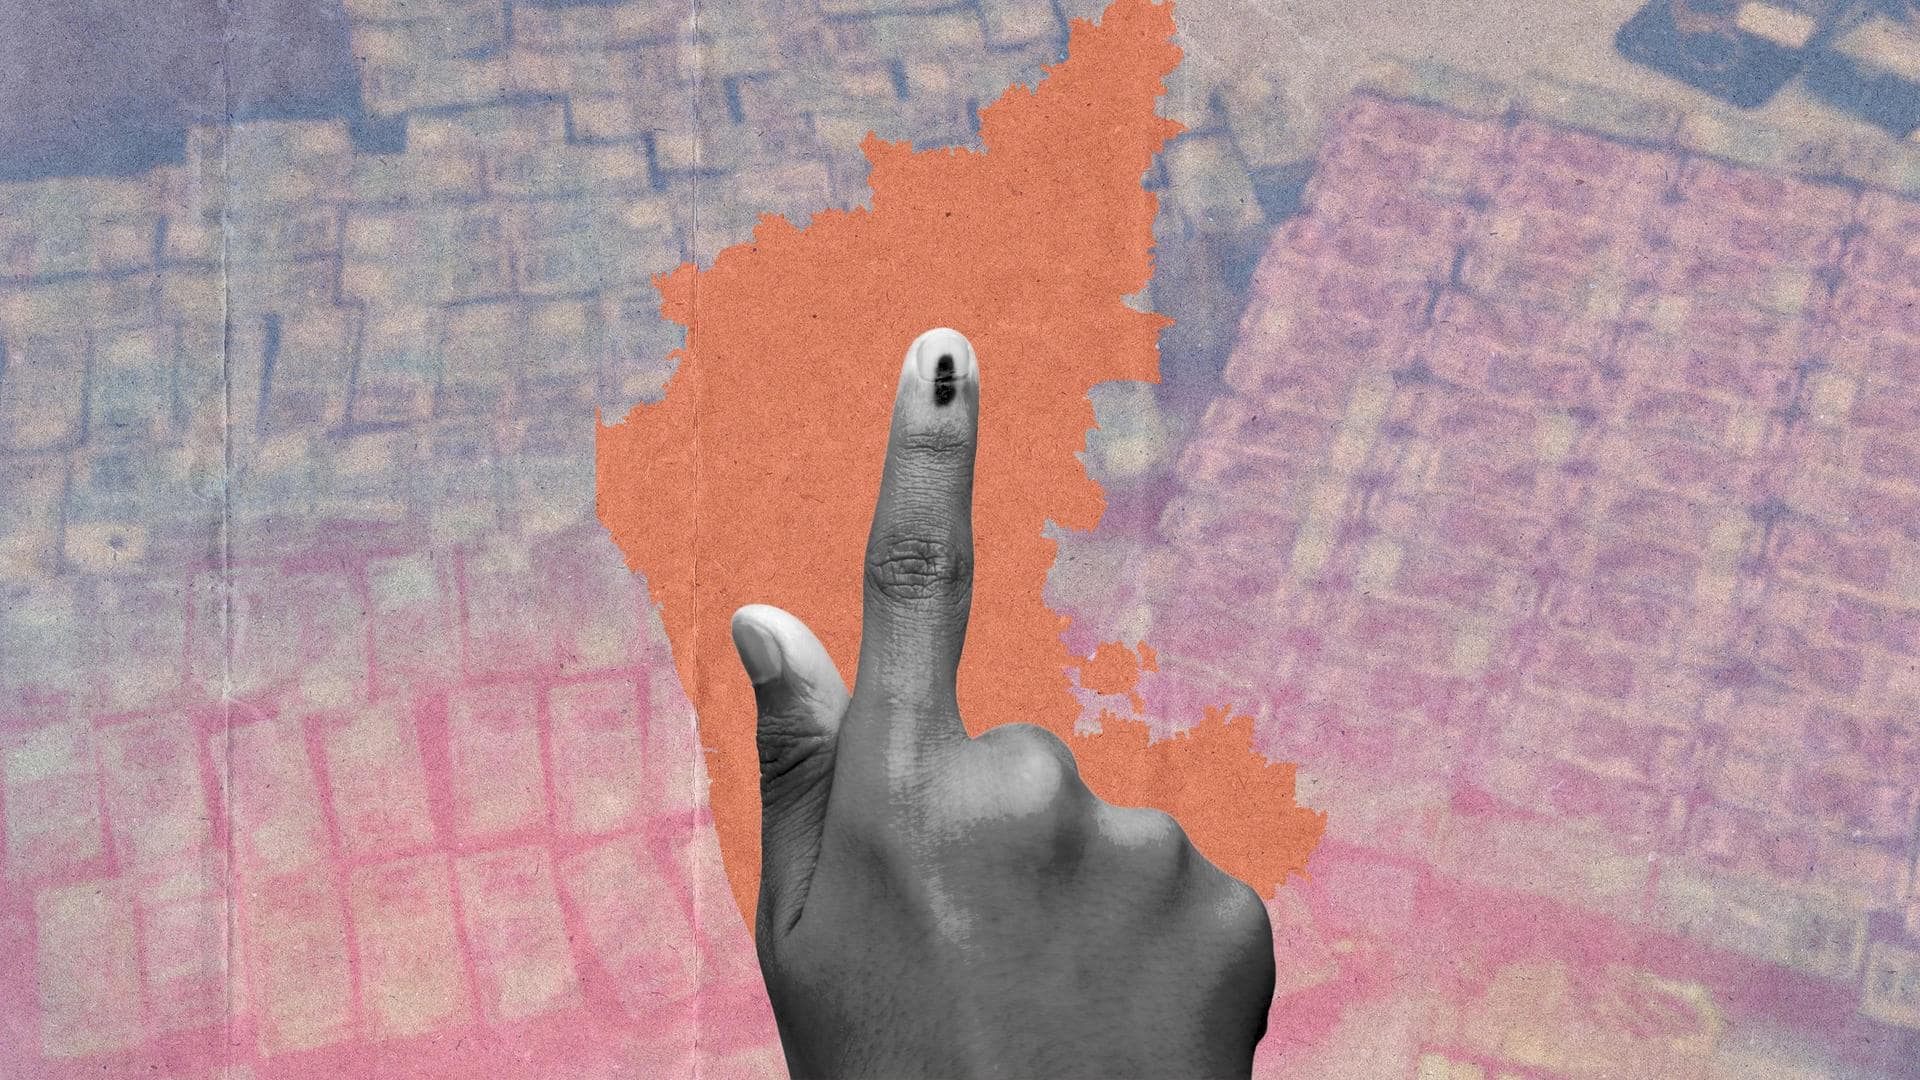 Pre-poll seizures cross Rs. 300 crore in Karnataka: ECI